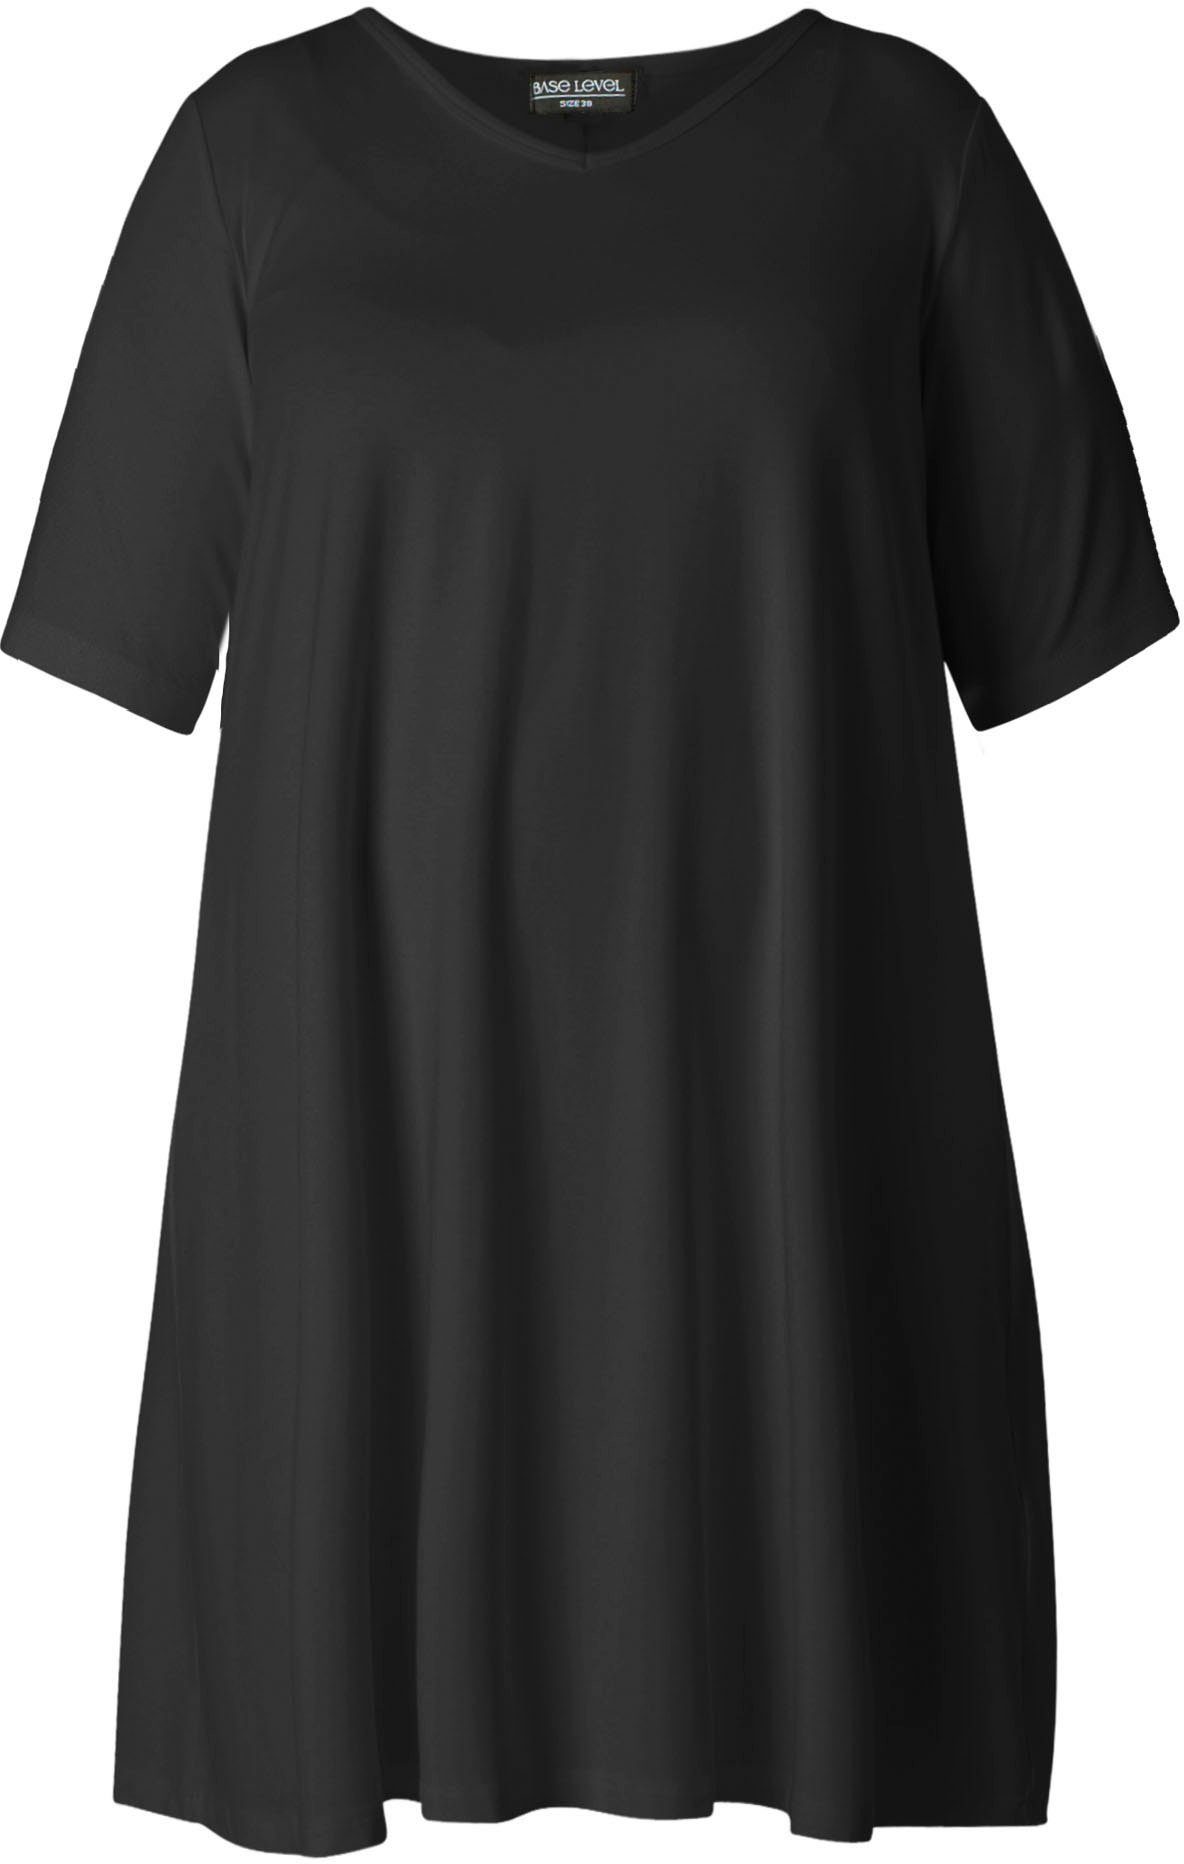 Base Level Curvy Shirtkleid Abernathy In ausgestellter Form black leicht